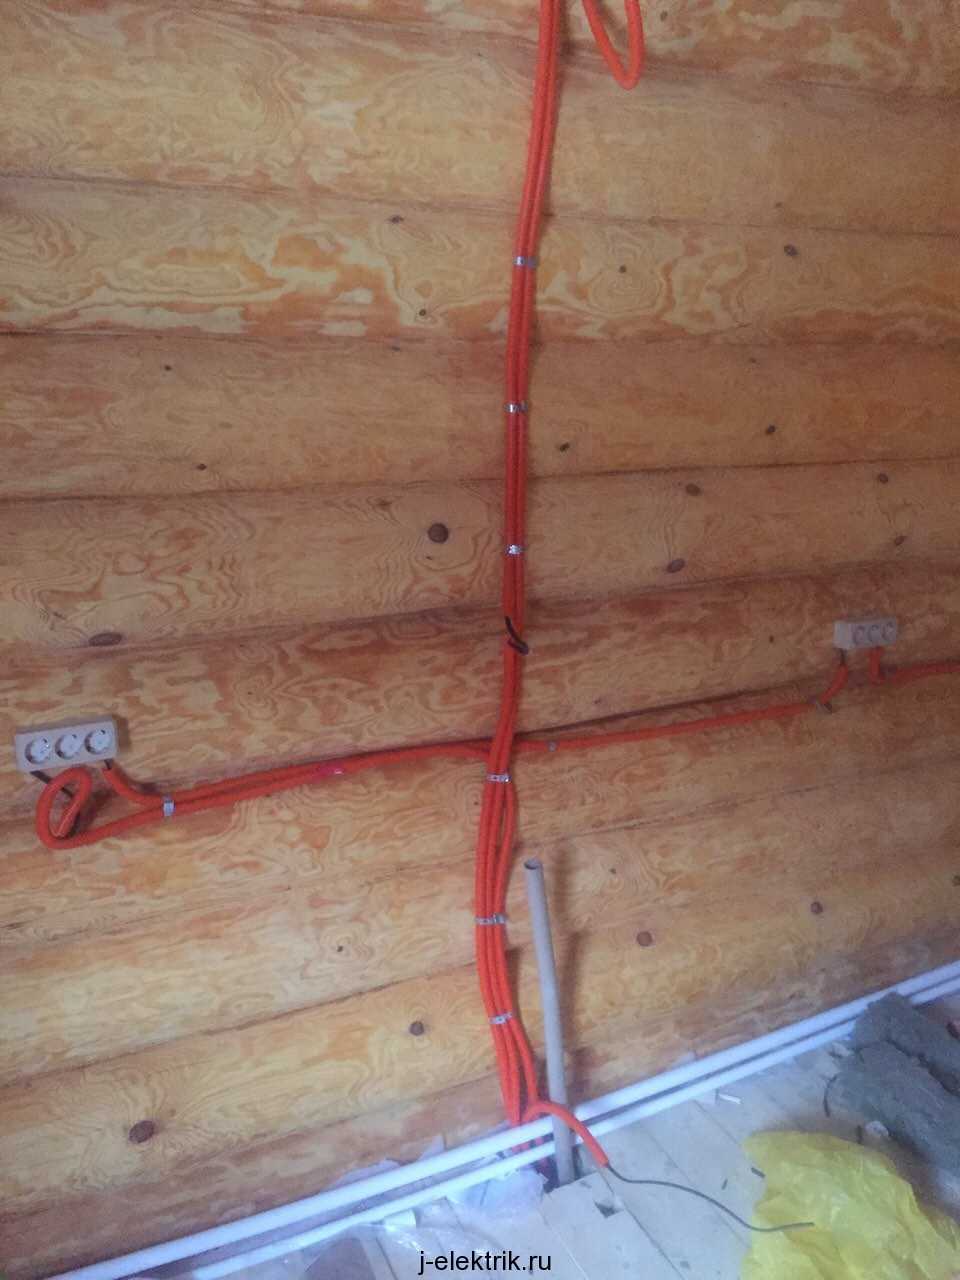 Каким кабелем делать проводку в деревянном доме — обзор негорючих видов кабеля и правила безопасной укладки проводки